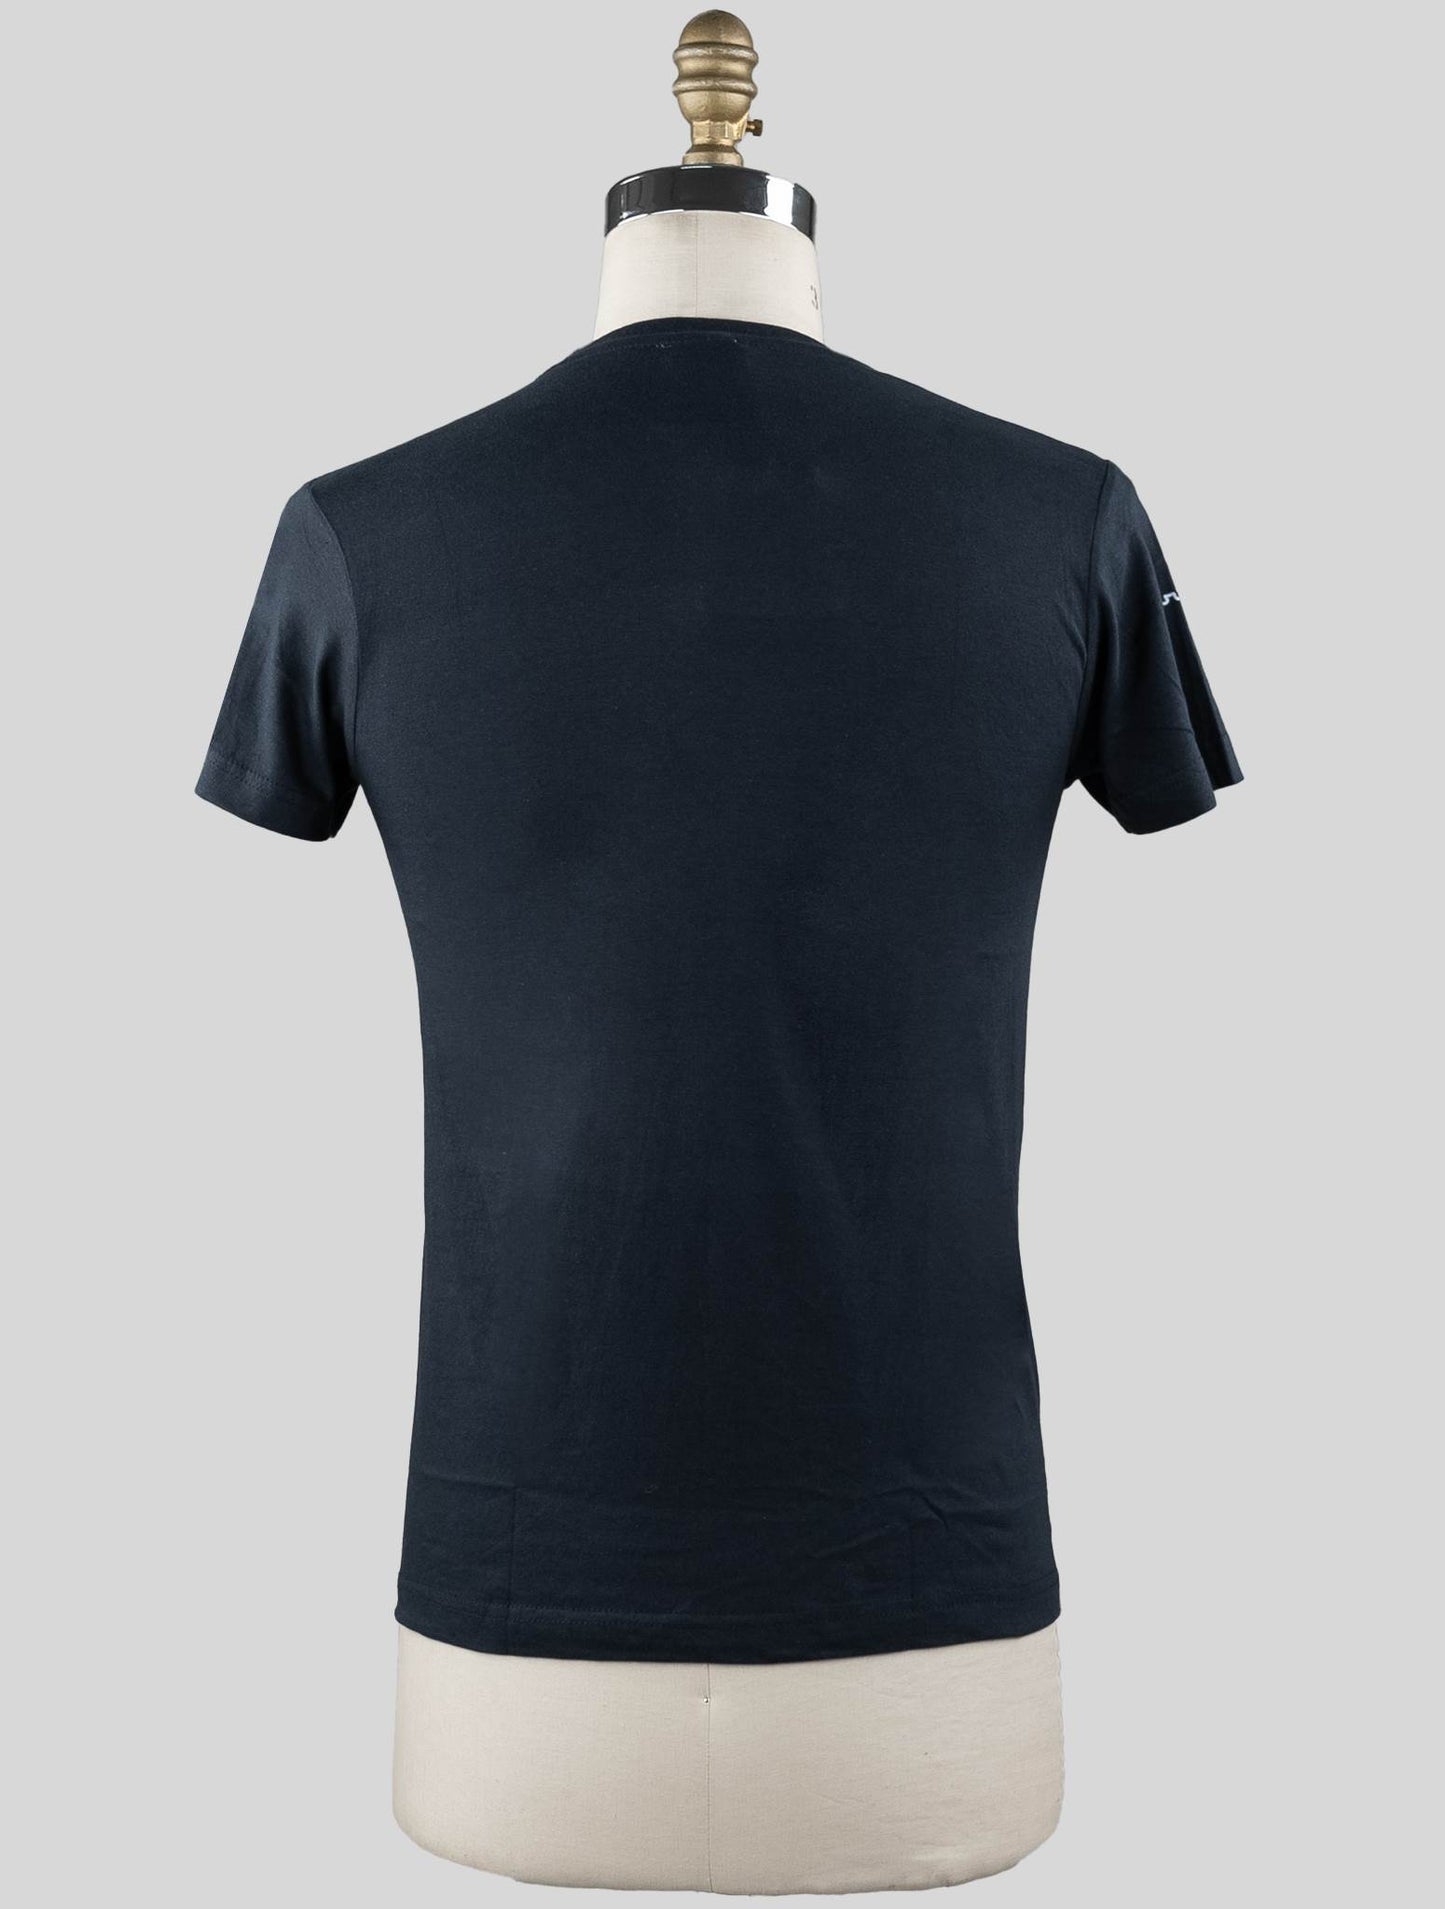 赛托里奥那不勒斯蓝色海军棉质T恤特别版